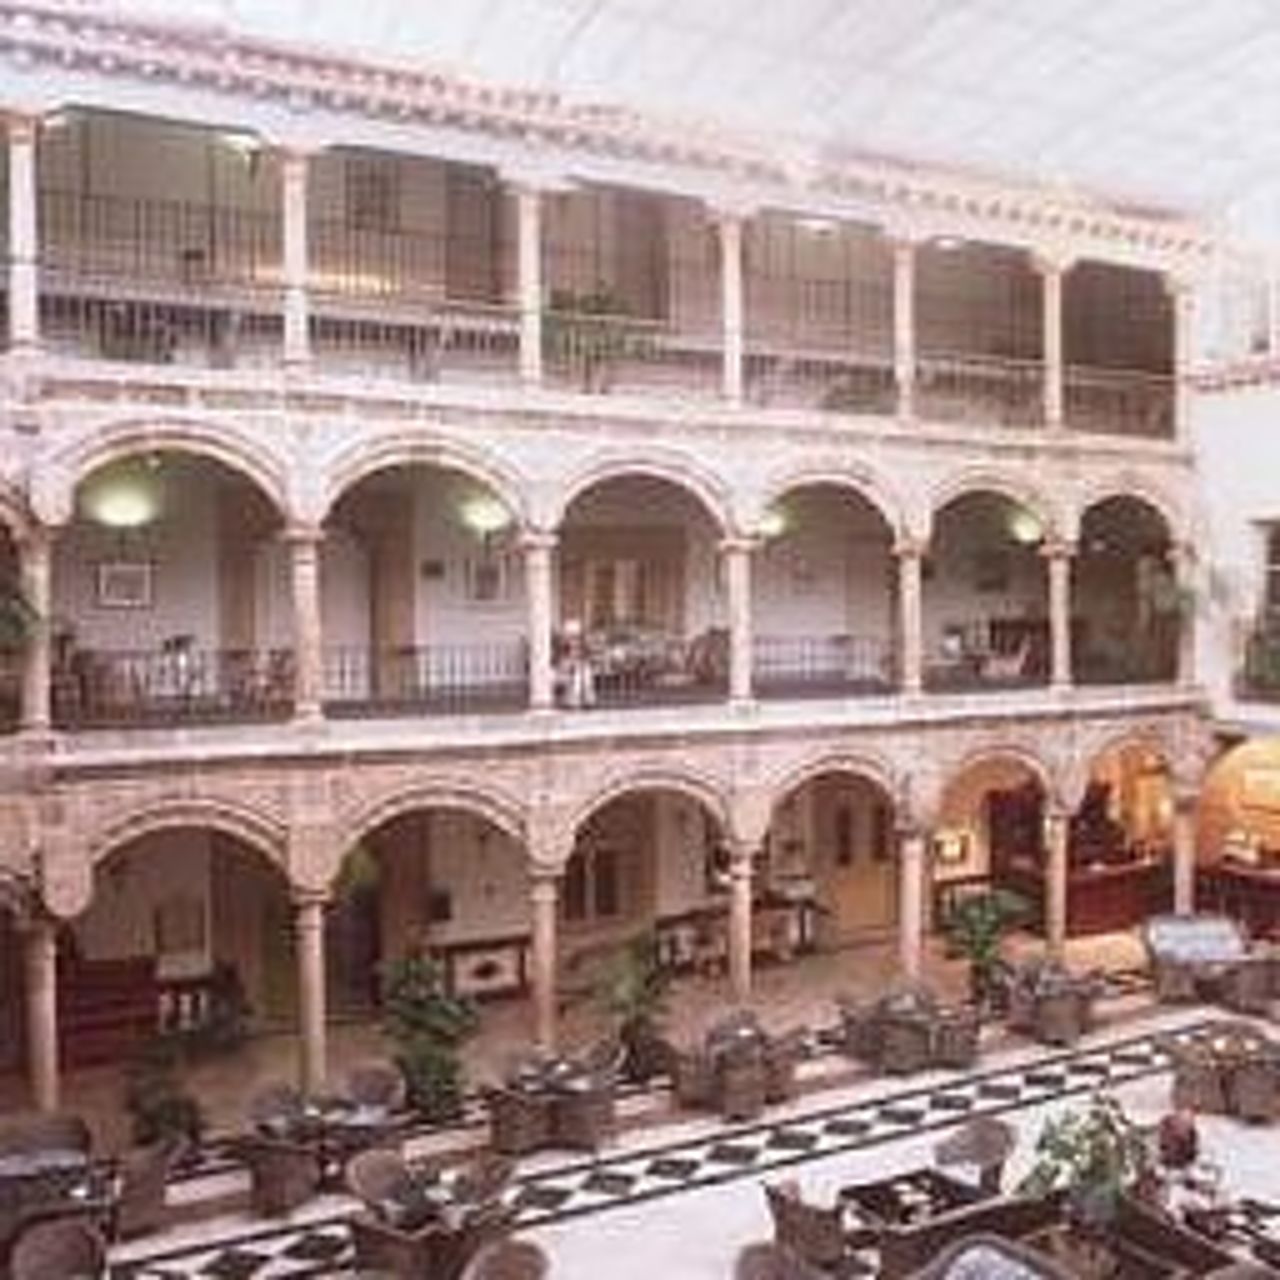 Hotel Palacio de los Velada - Ávila - Great prices at HOTEL INFO